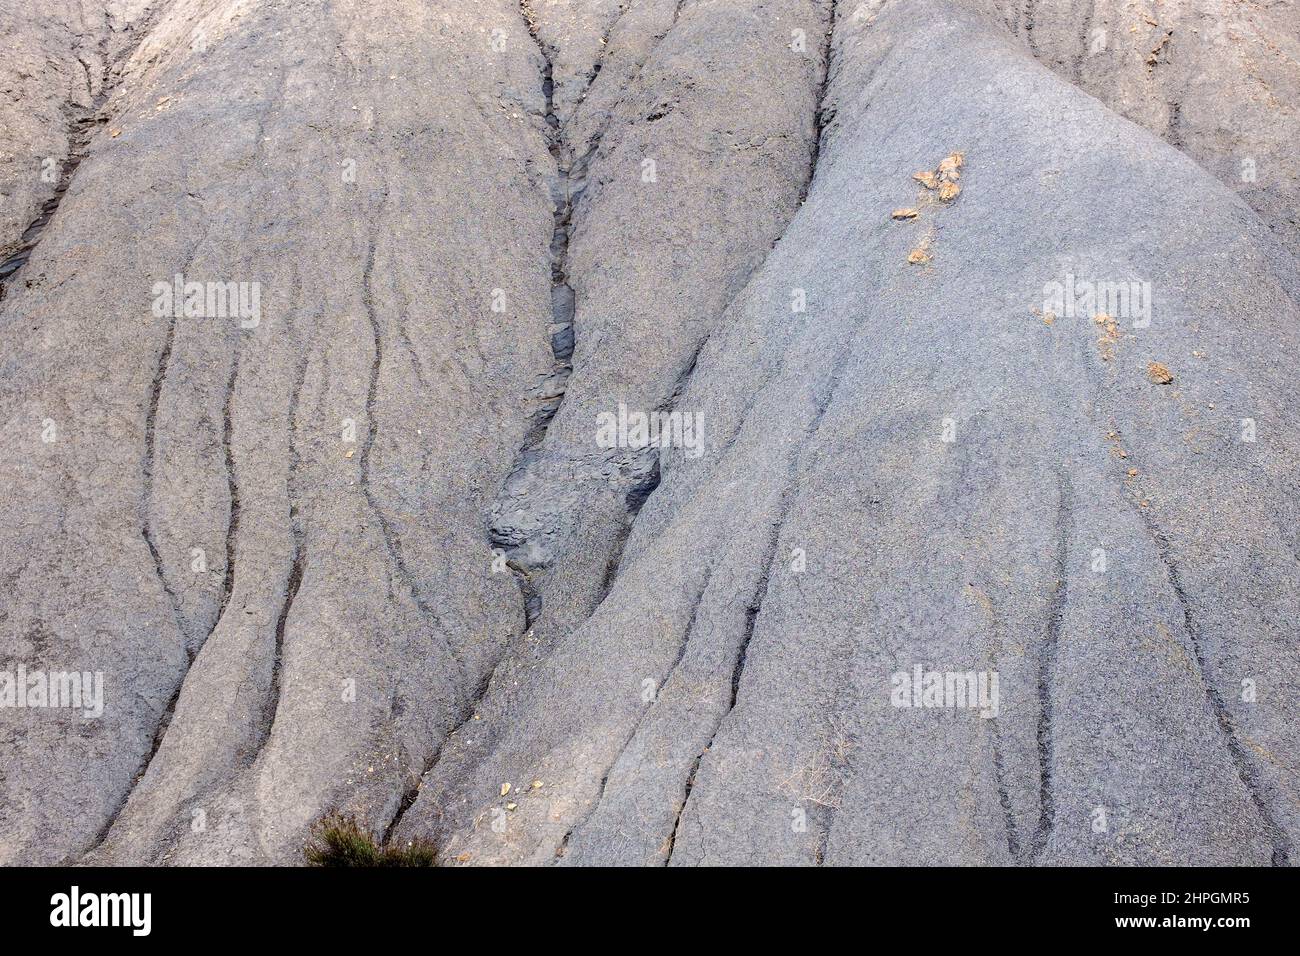 Formazioni rocciose a Barranco del Cautivo, Tabernas Desert, Almería, Andalusia, Spagna Foto Stock